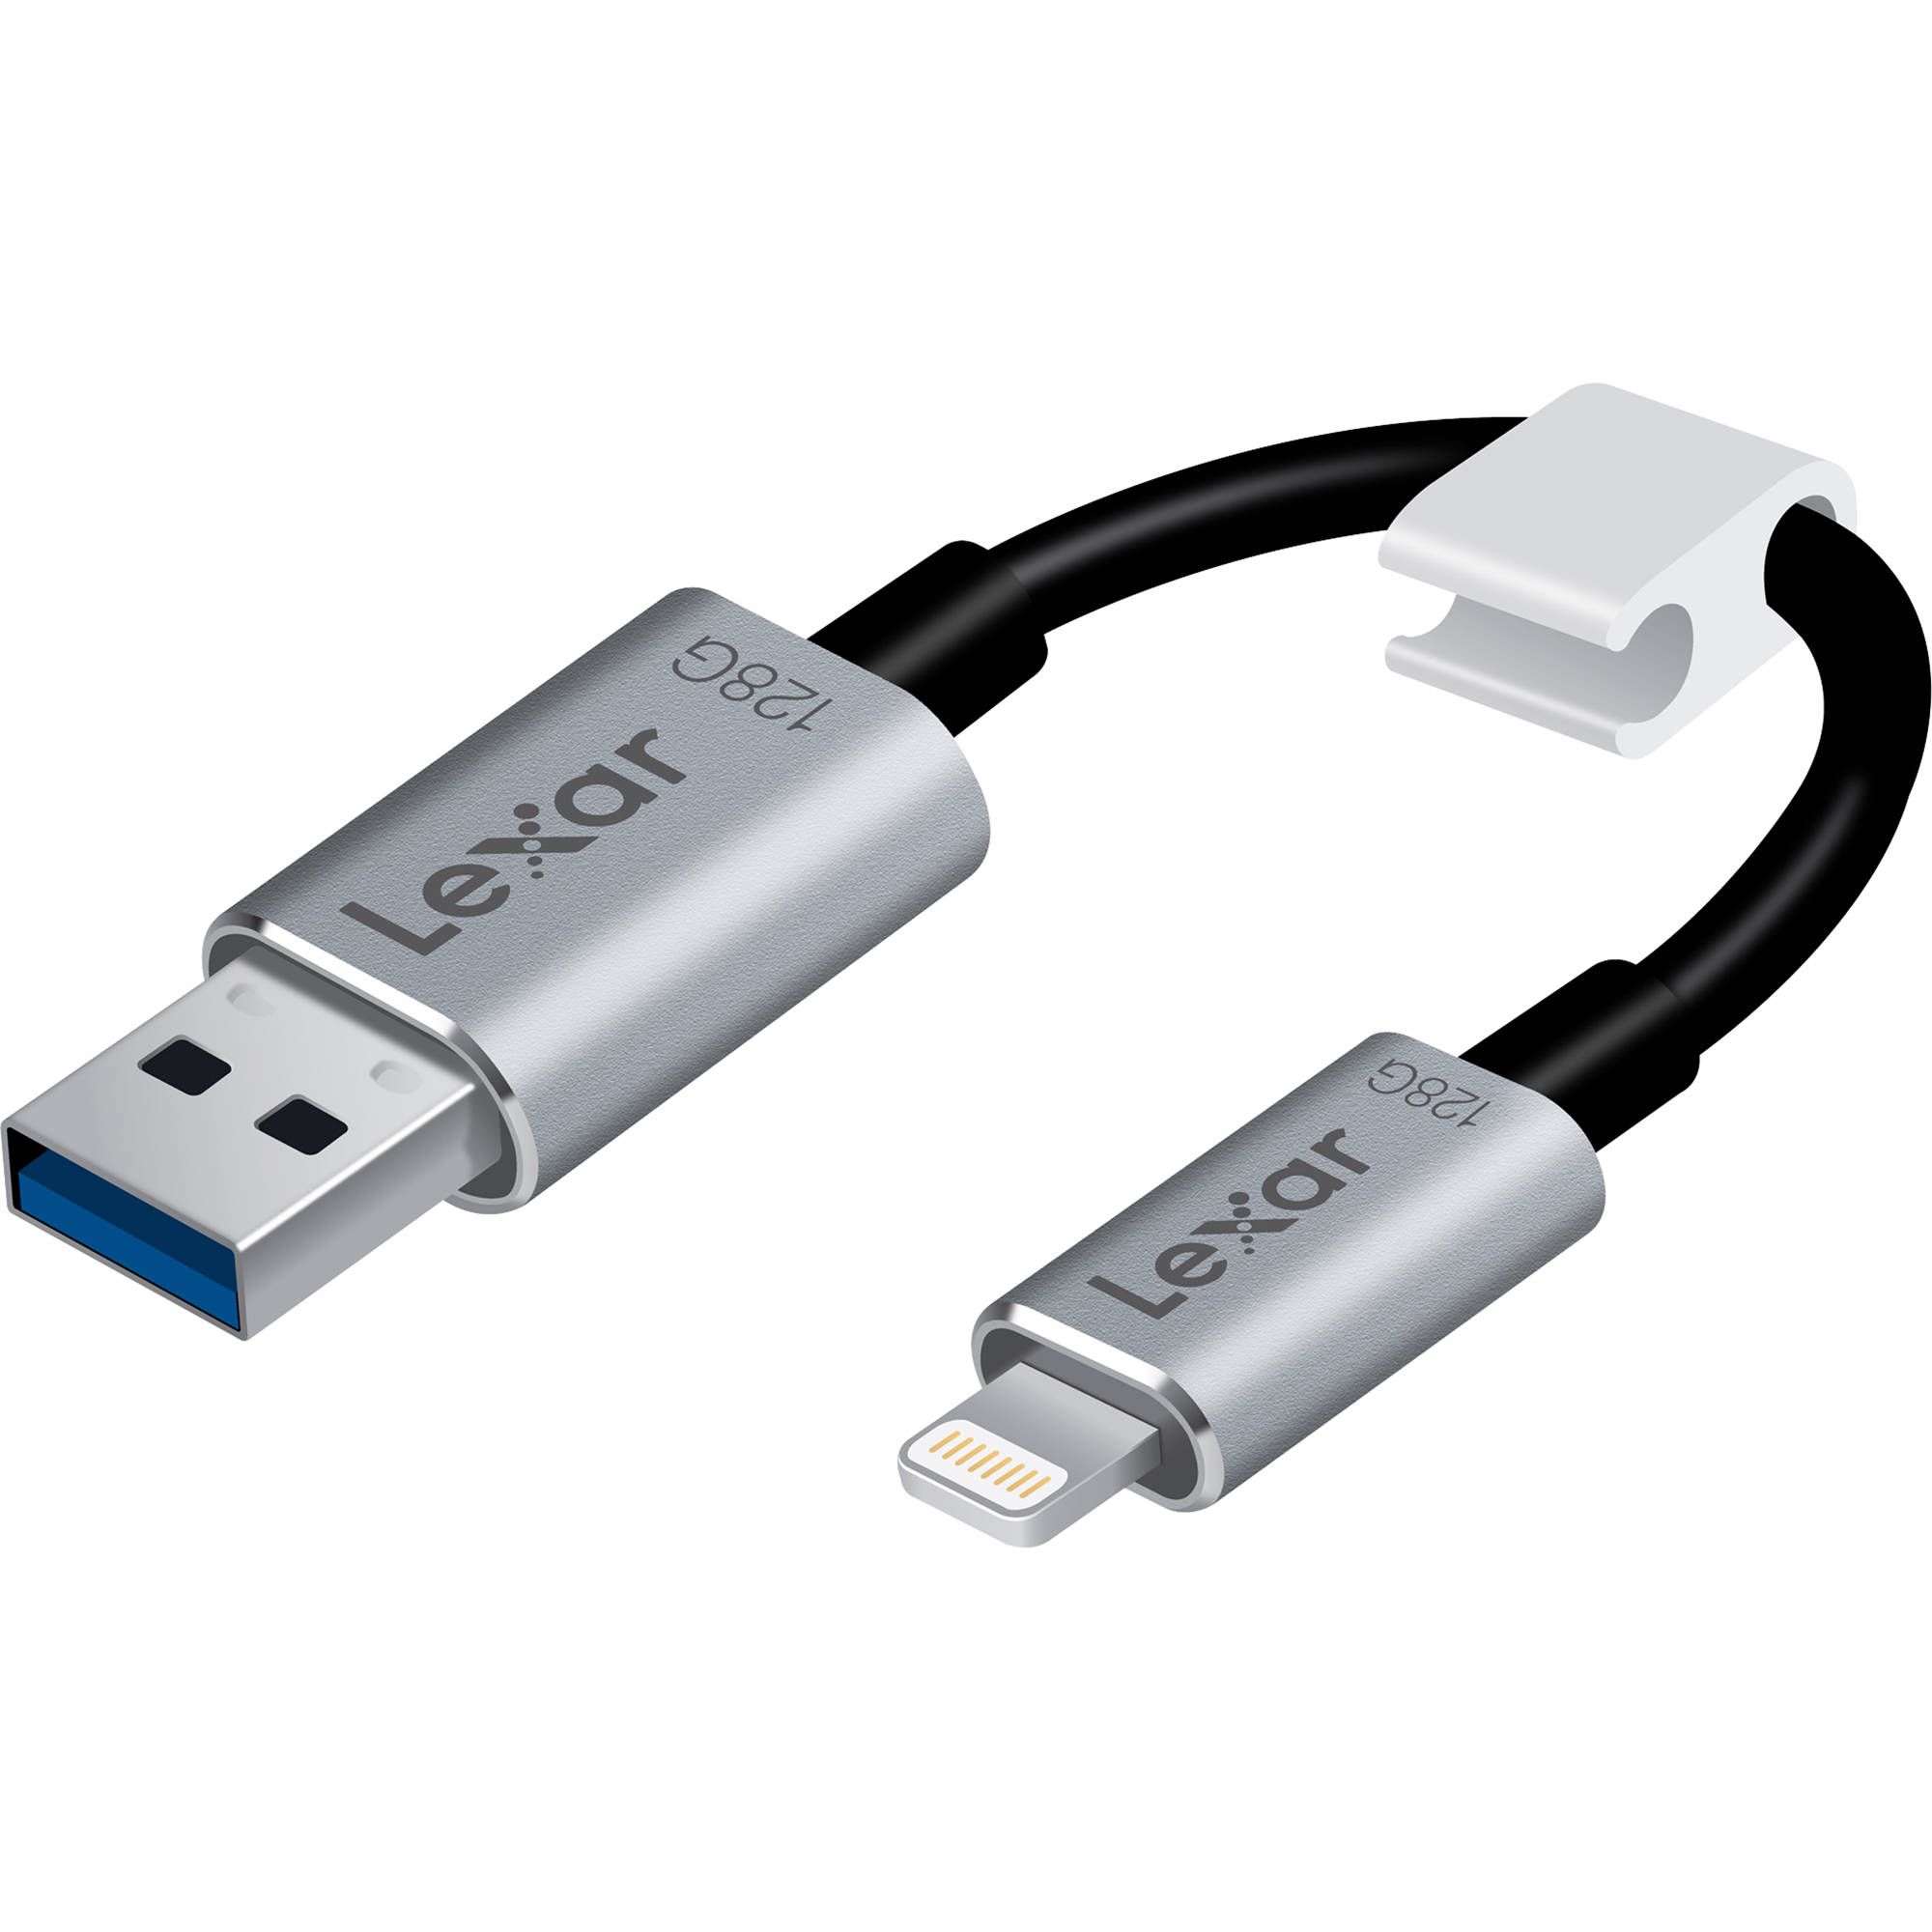 LEXAR JUMPDRIVE 128GB C25I IPHONE USB 3.0 LJDC25I-128BBNL